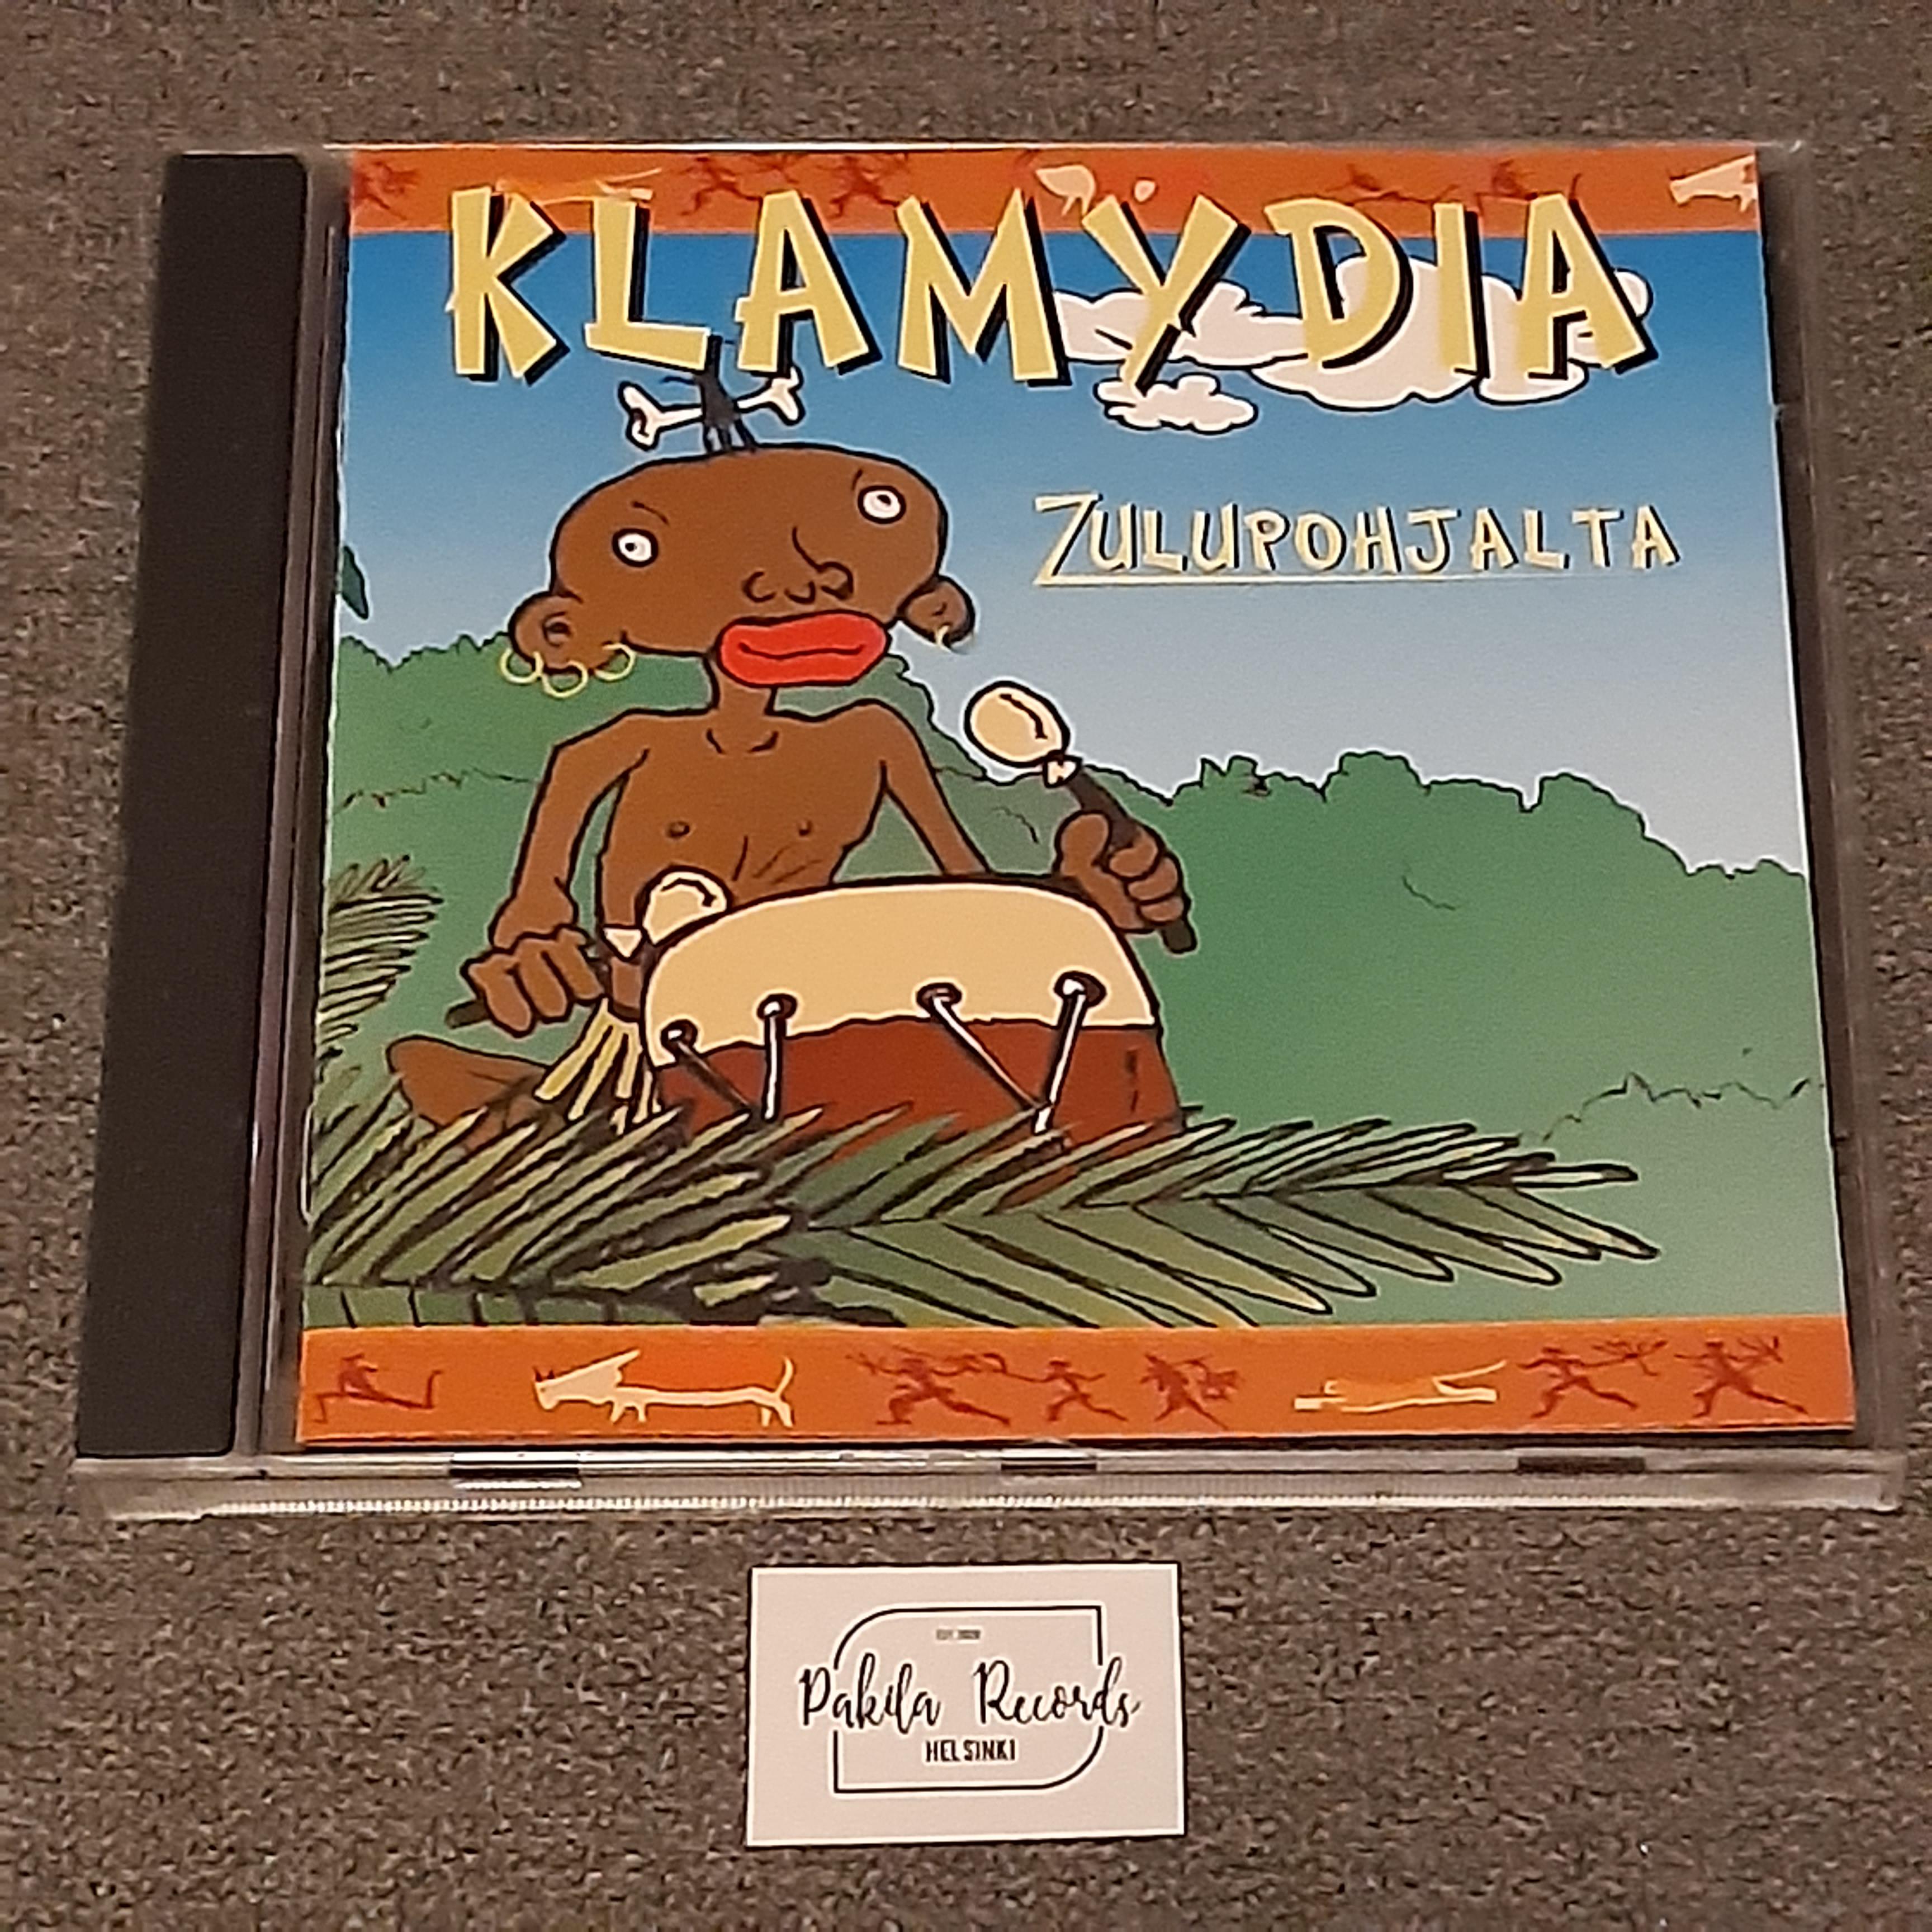 Klamydia - Zulupohjalta - CD (käytetty)